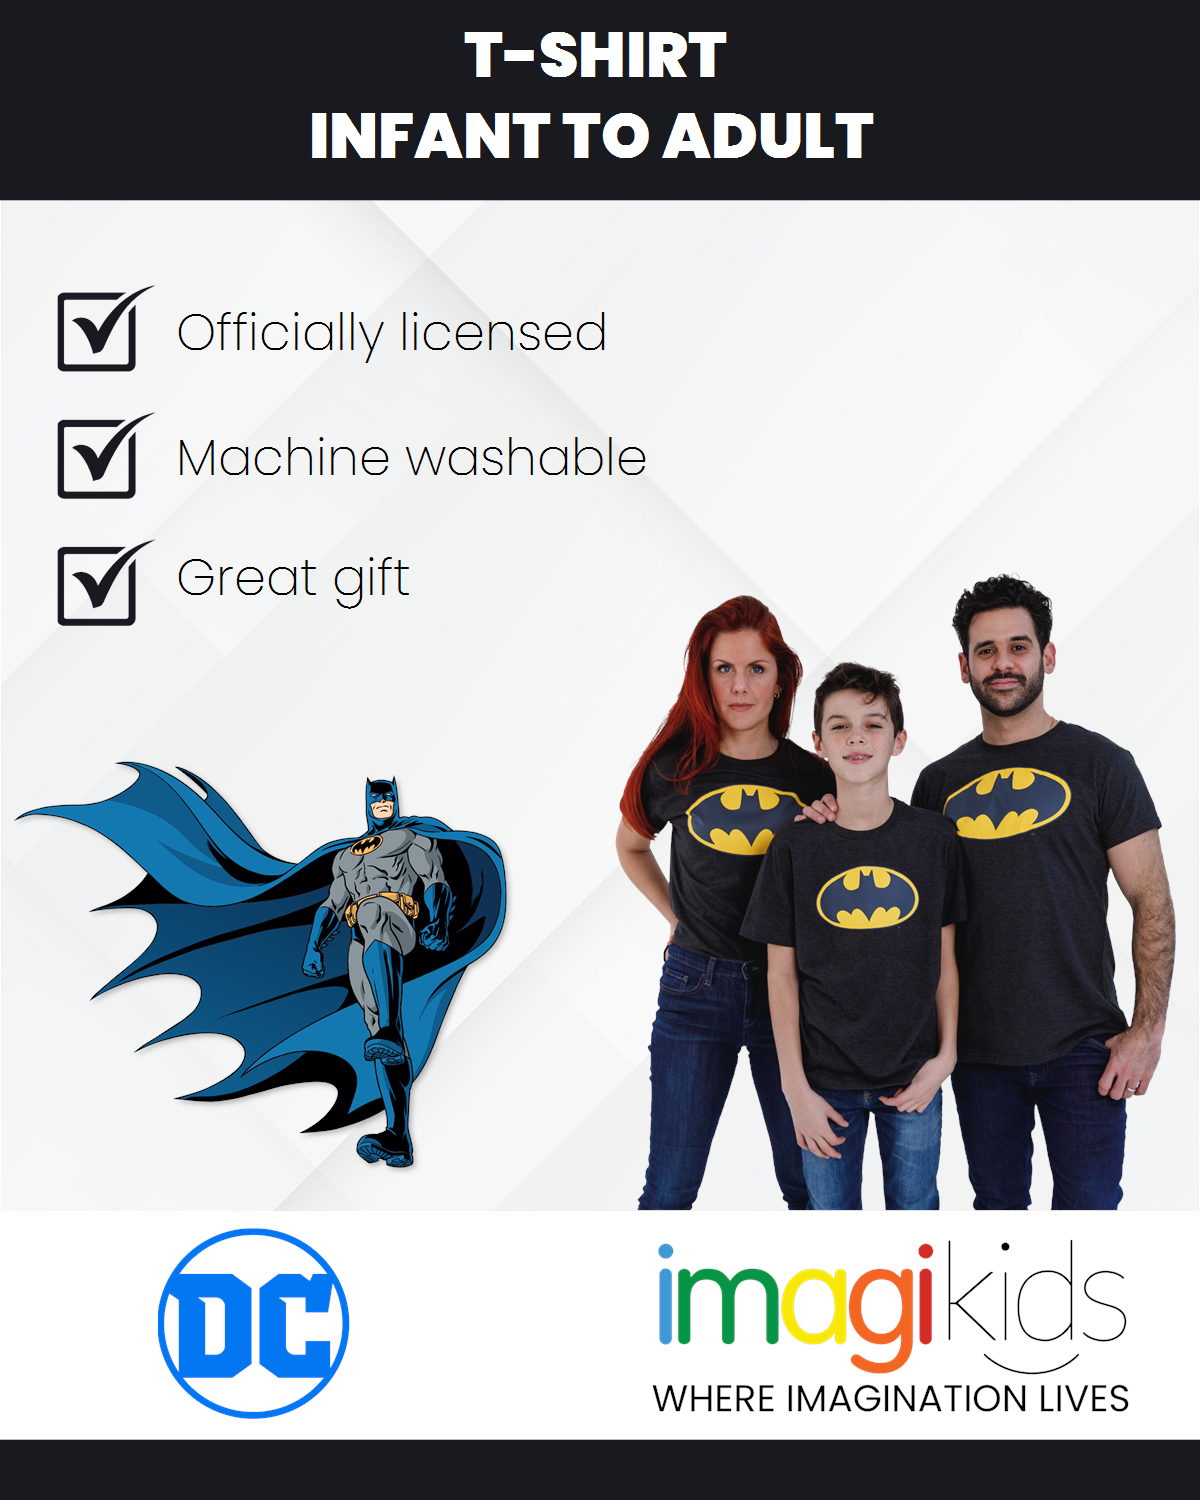 DC Comics Batman T-Shirt